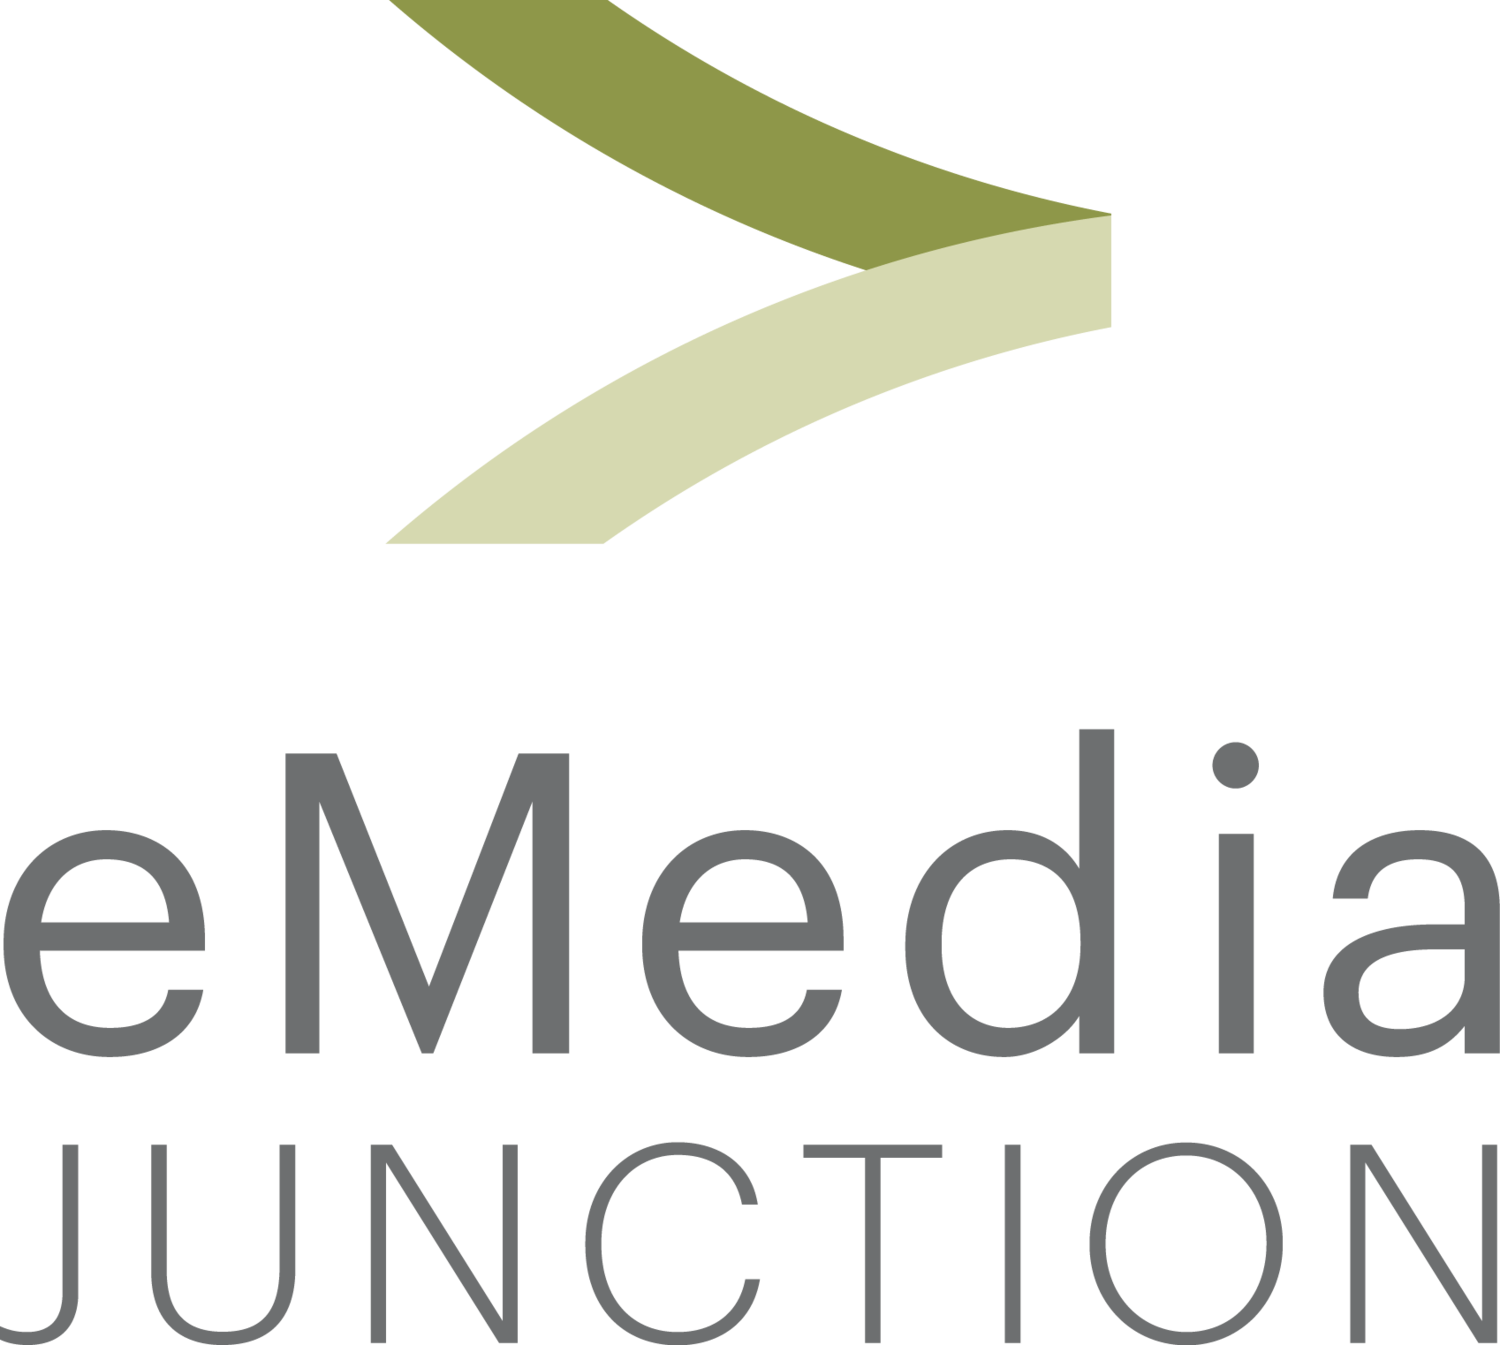 eMedia Junction